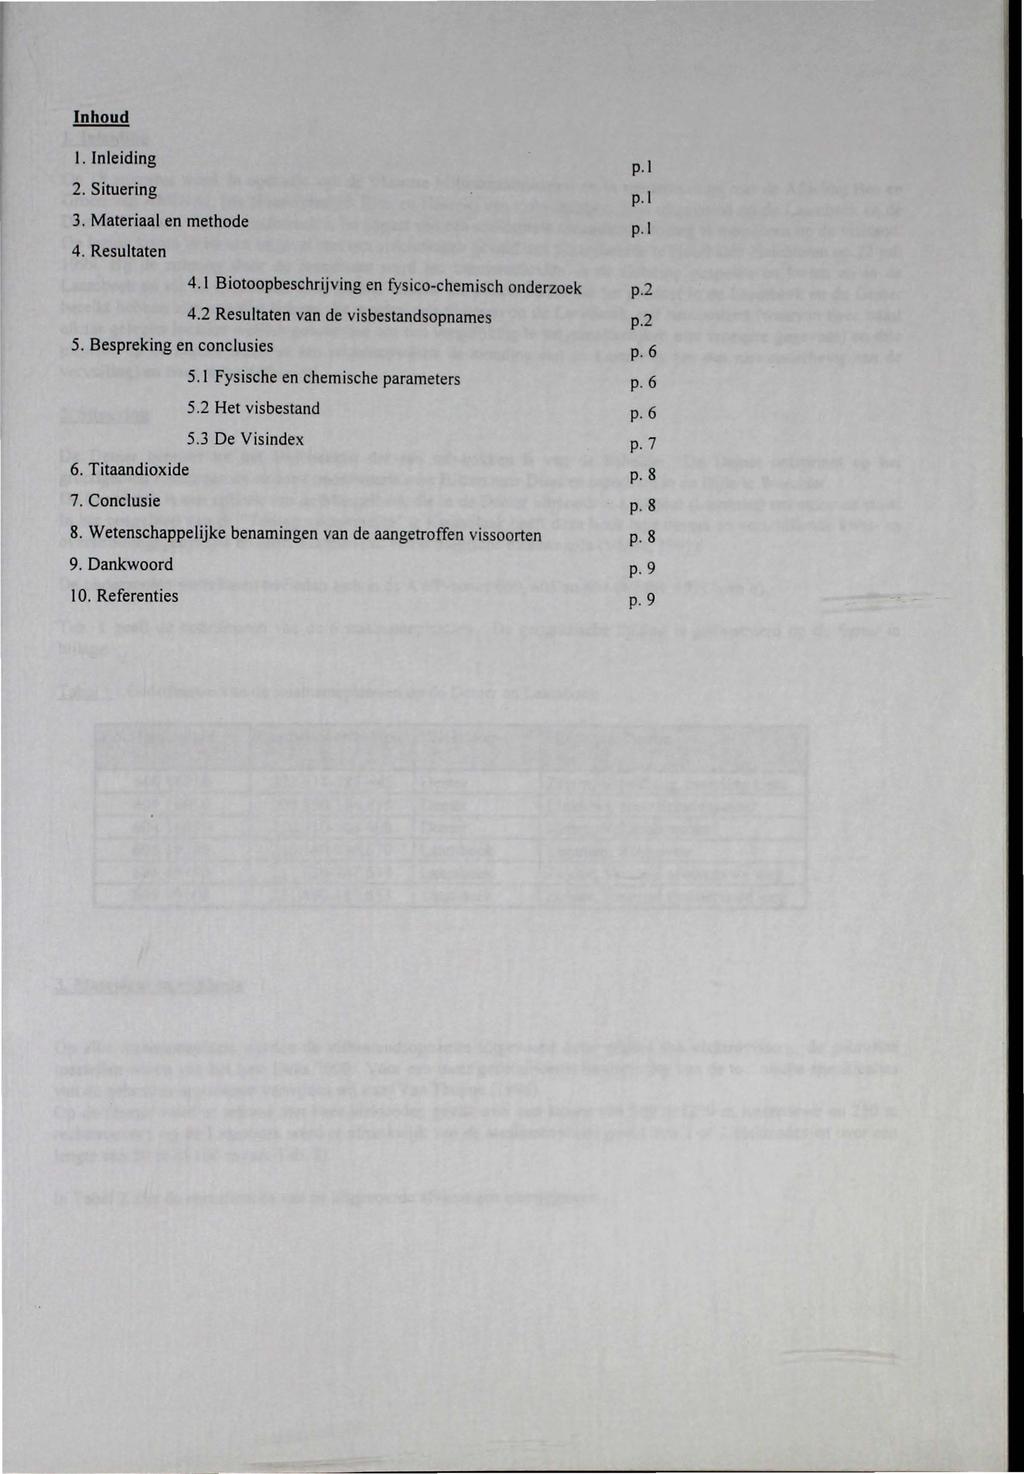 Inhoud I. Inleiding 2. Situering 3. Materiaal en methode 4. Resultaten p. l p.l p. l 4.1 Biotoopbeschrijving en fysico-chemisch onderzoek p.2 4.2 Resultaten van de visbestandsopnames p.2 5.